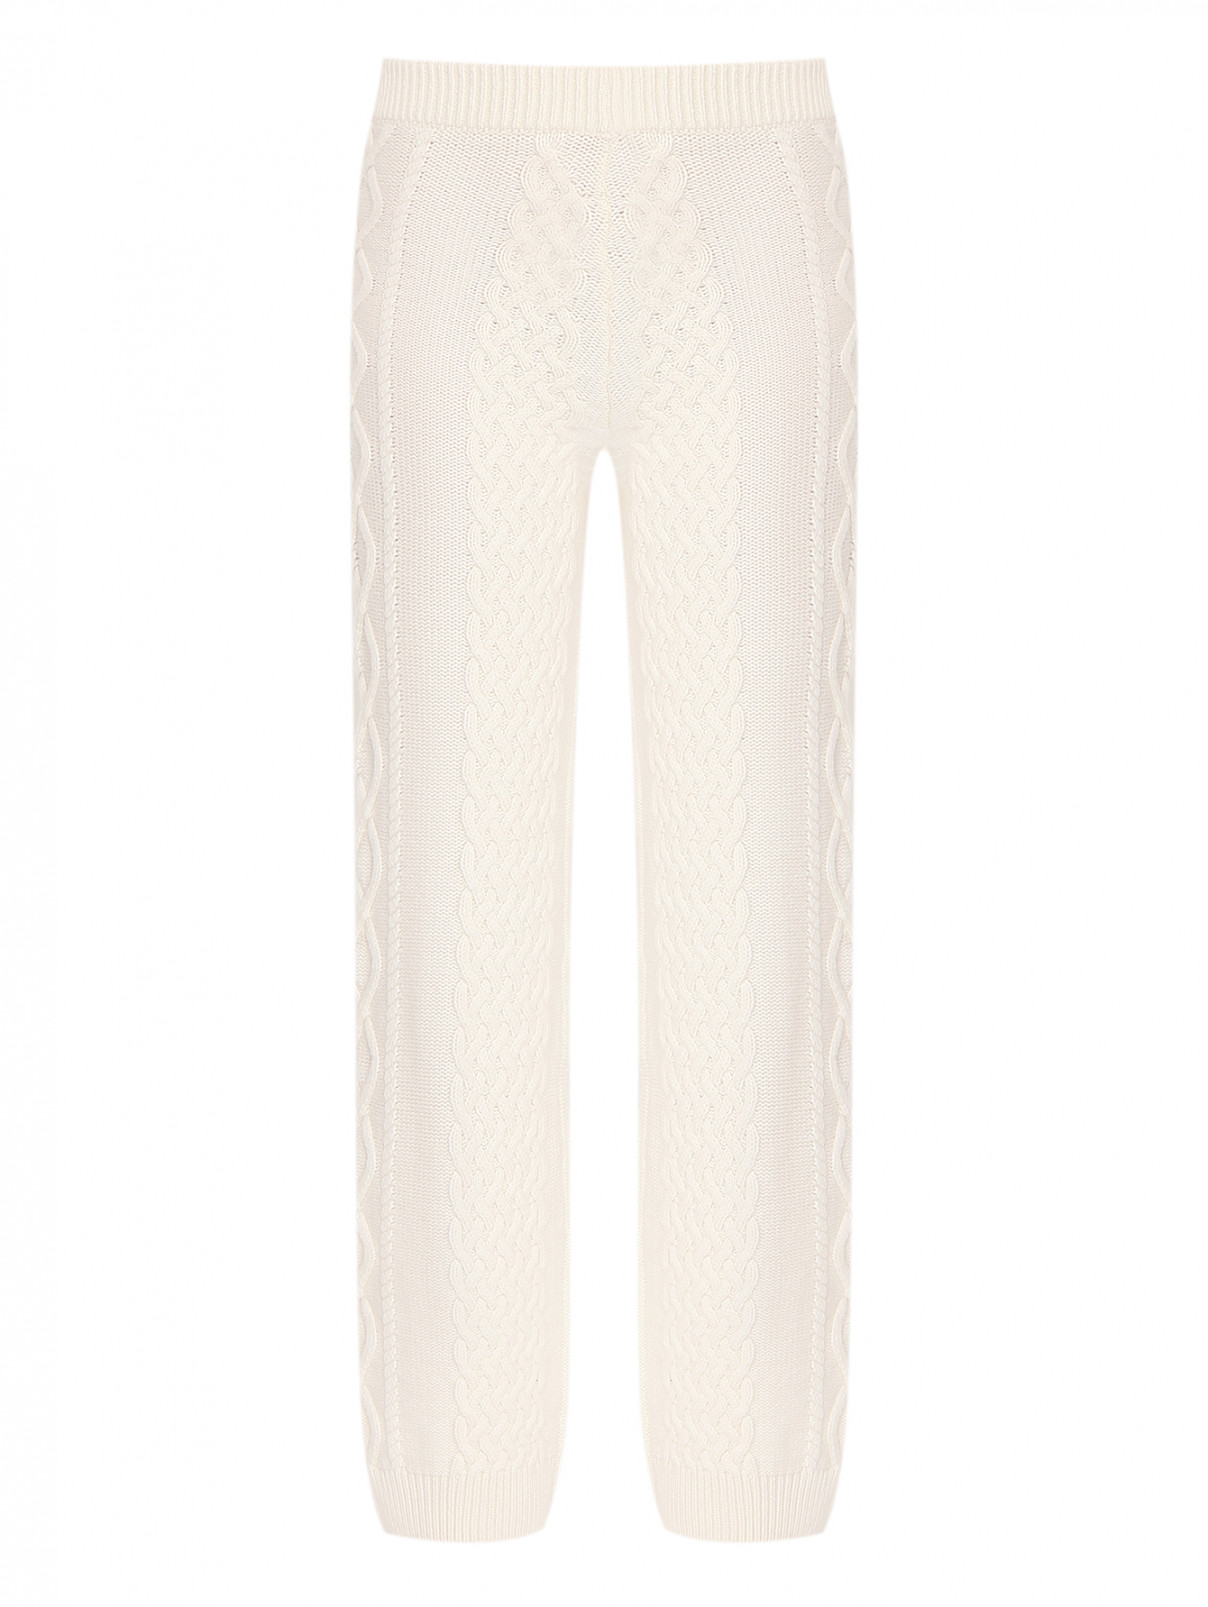 Трикотажные брюки на резинке Lorena Antoniazzi  –  Общий вид  – Цвет:  Белый